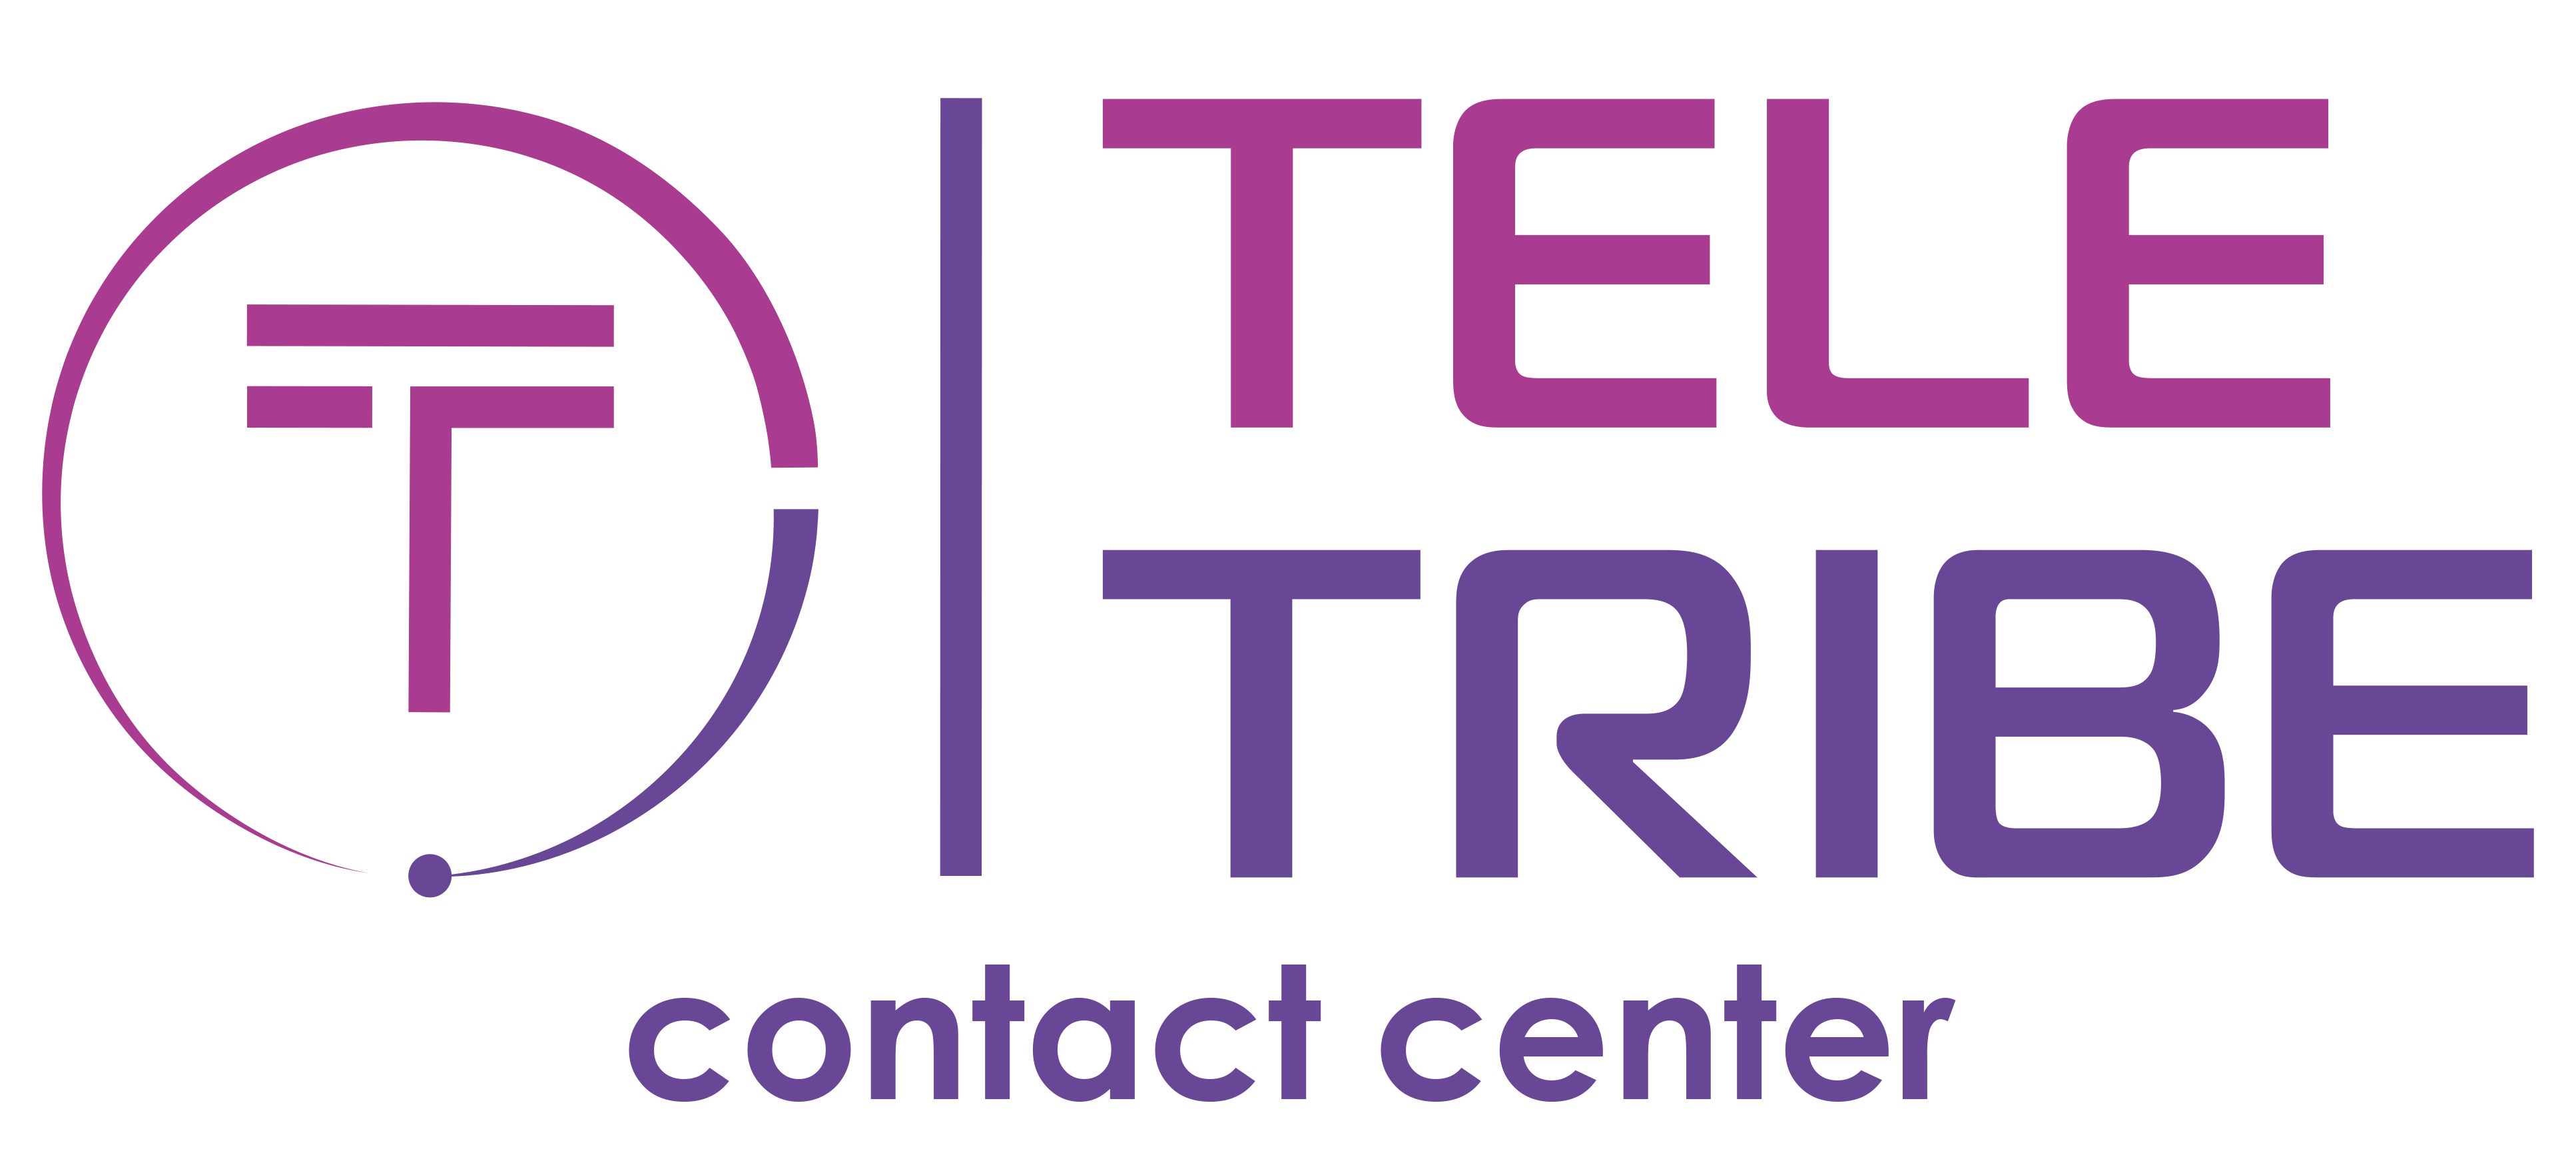 TeleTribe Contact center